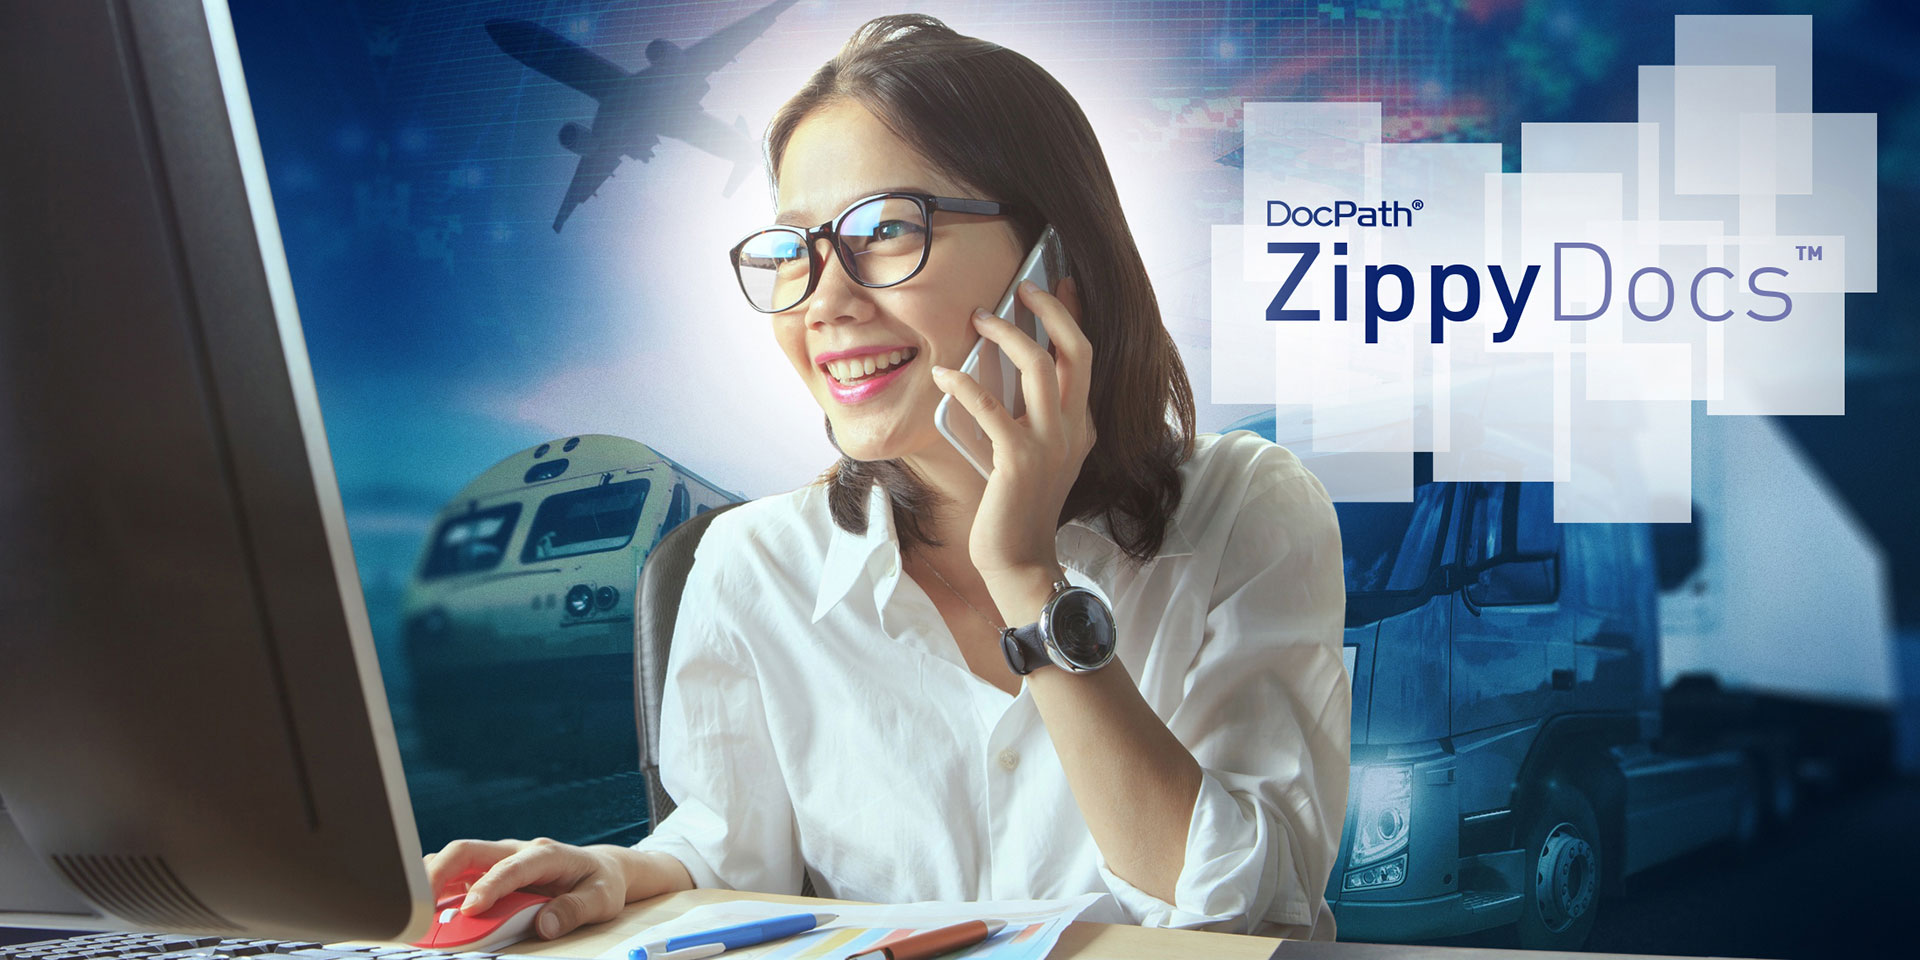 ZippyDocs - DocPath - Sector logistico - casos de éxito - España